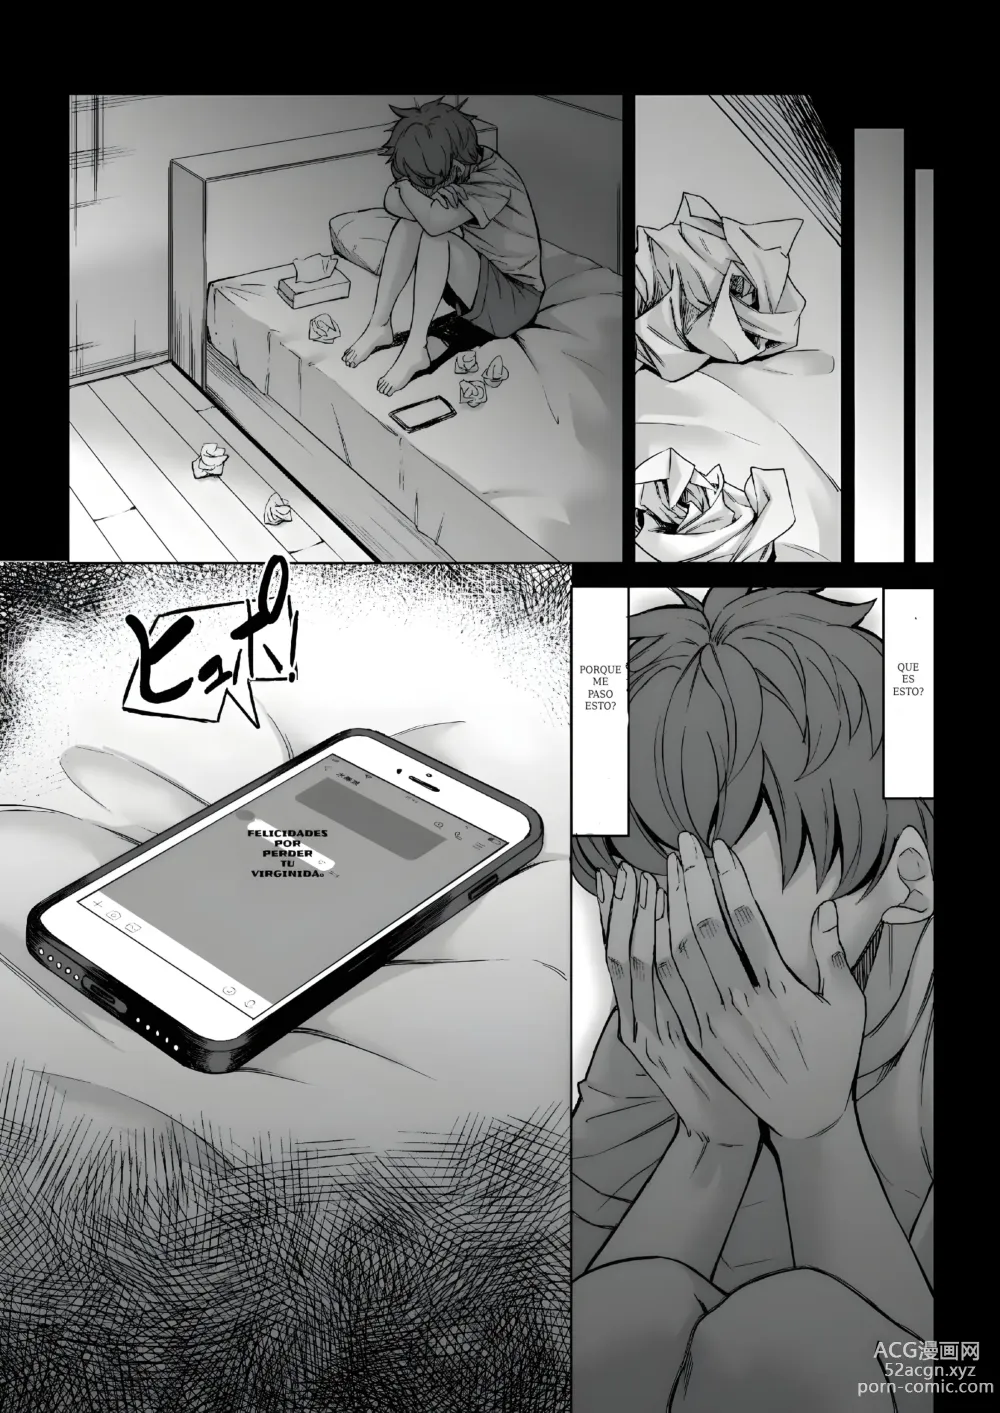 Page 42 of doujinshi Mi virginidad fue robada mientras dormia